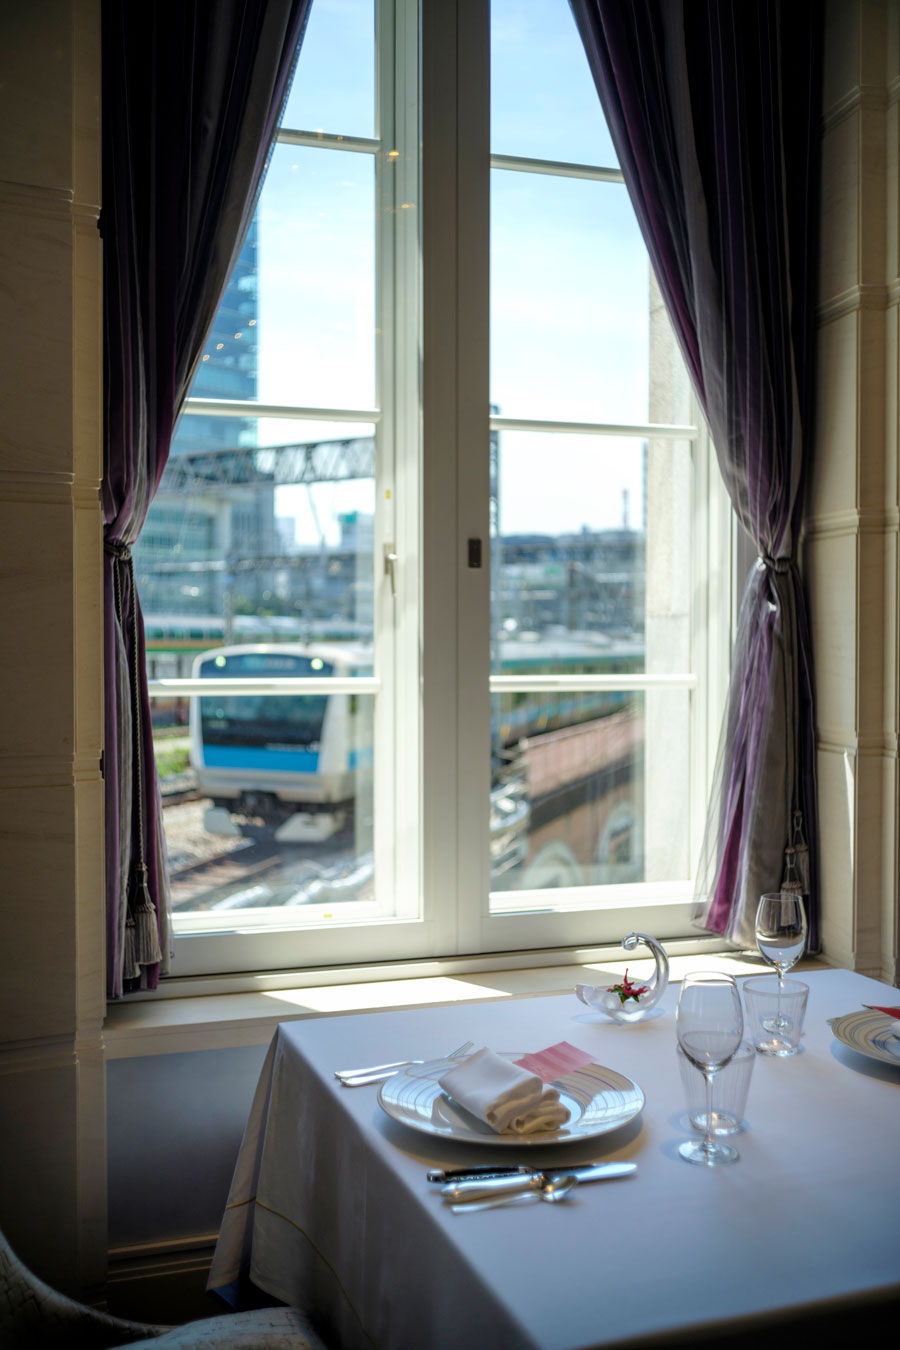 レストラン「ブラン ルージュ」。窓ぎわの席は、行き交う列車を間近に眺めることができます。